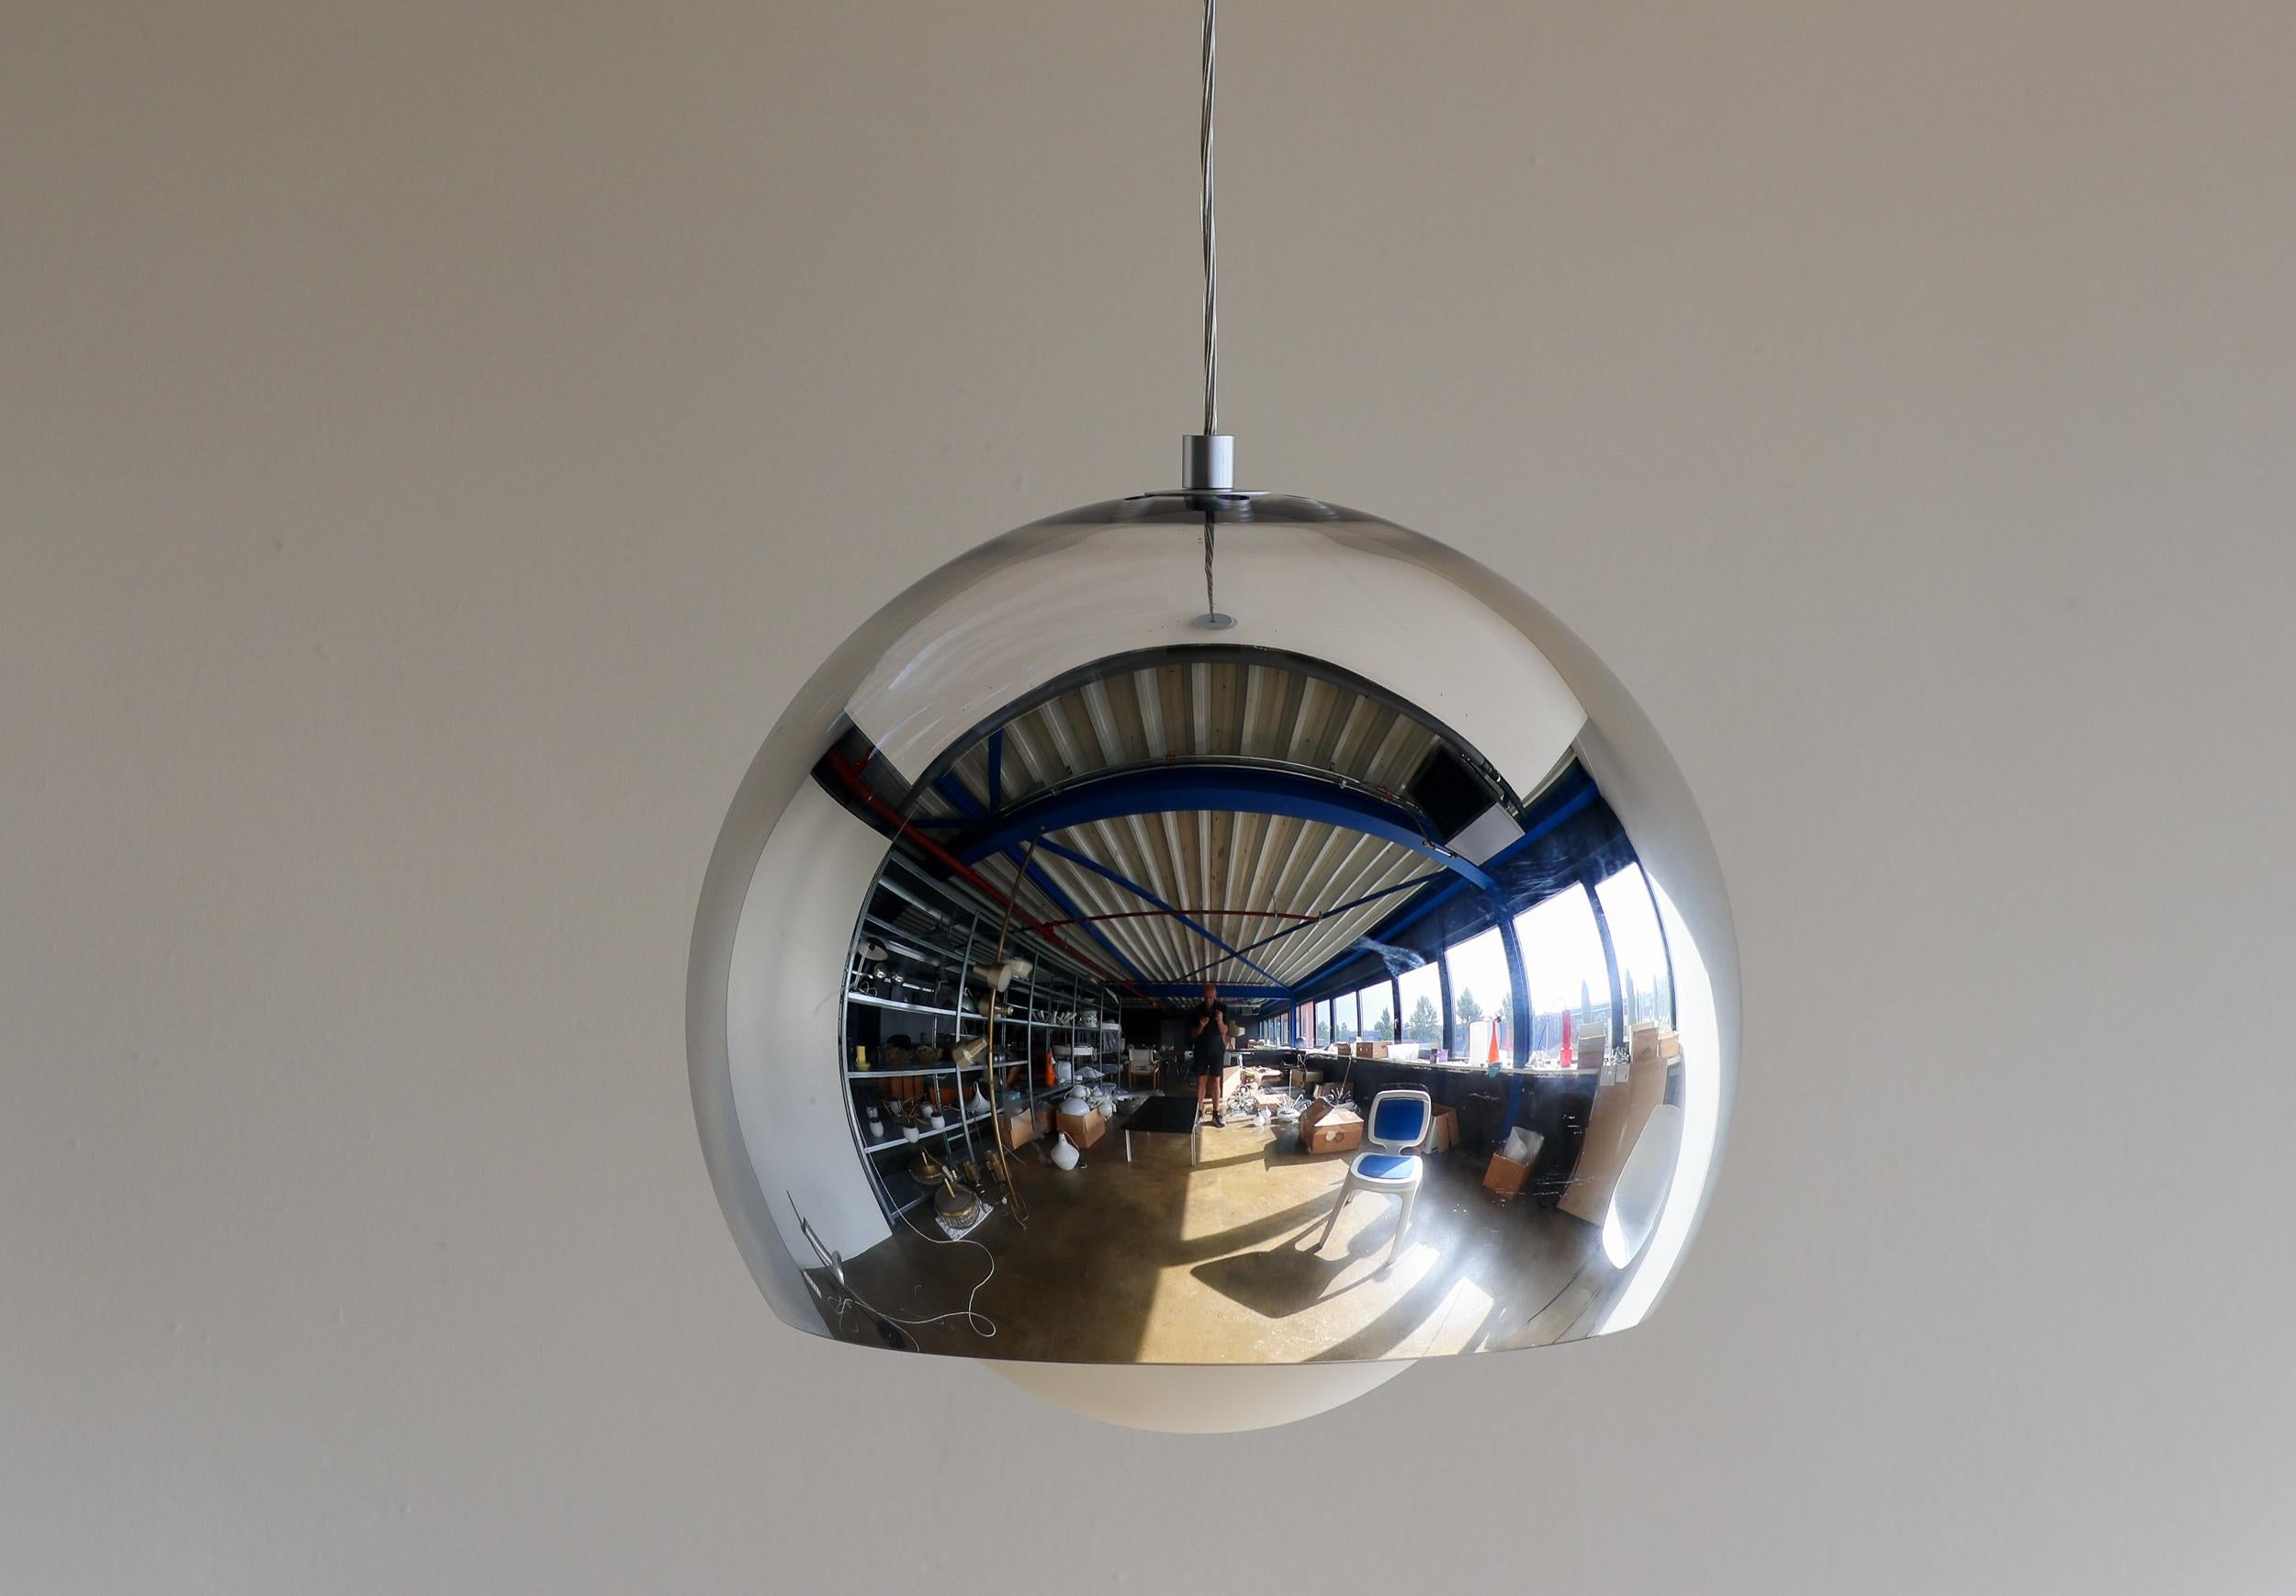 Grande suspension du designer italien Matteo Thun pour Zumtobel lightning. 
Les luminaires suspendus sphériques offrent un effet d'éclairage idéal grâce à leur unité de luminaire partiellement transparente avec un revêtement chromé réfléchissant et